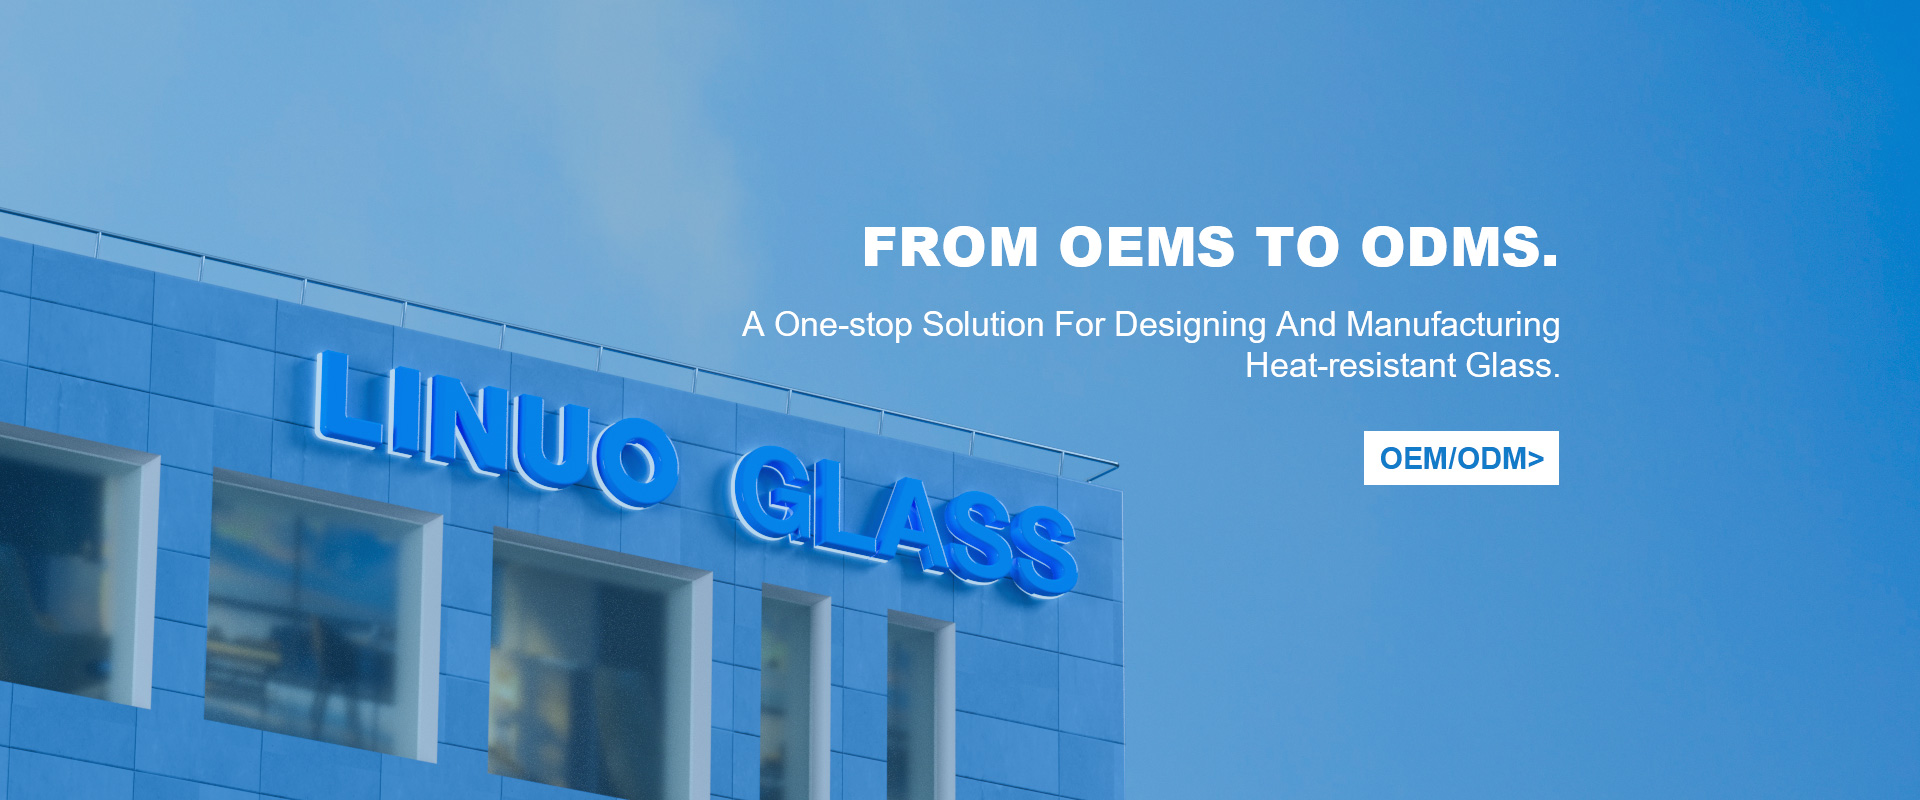 Uma solução completa para projetar e fabricar vidro resistente ao calor.